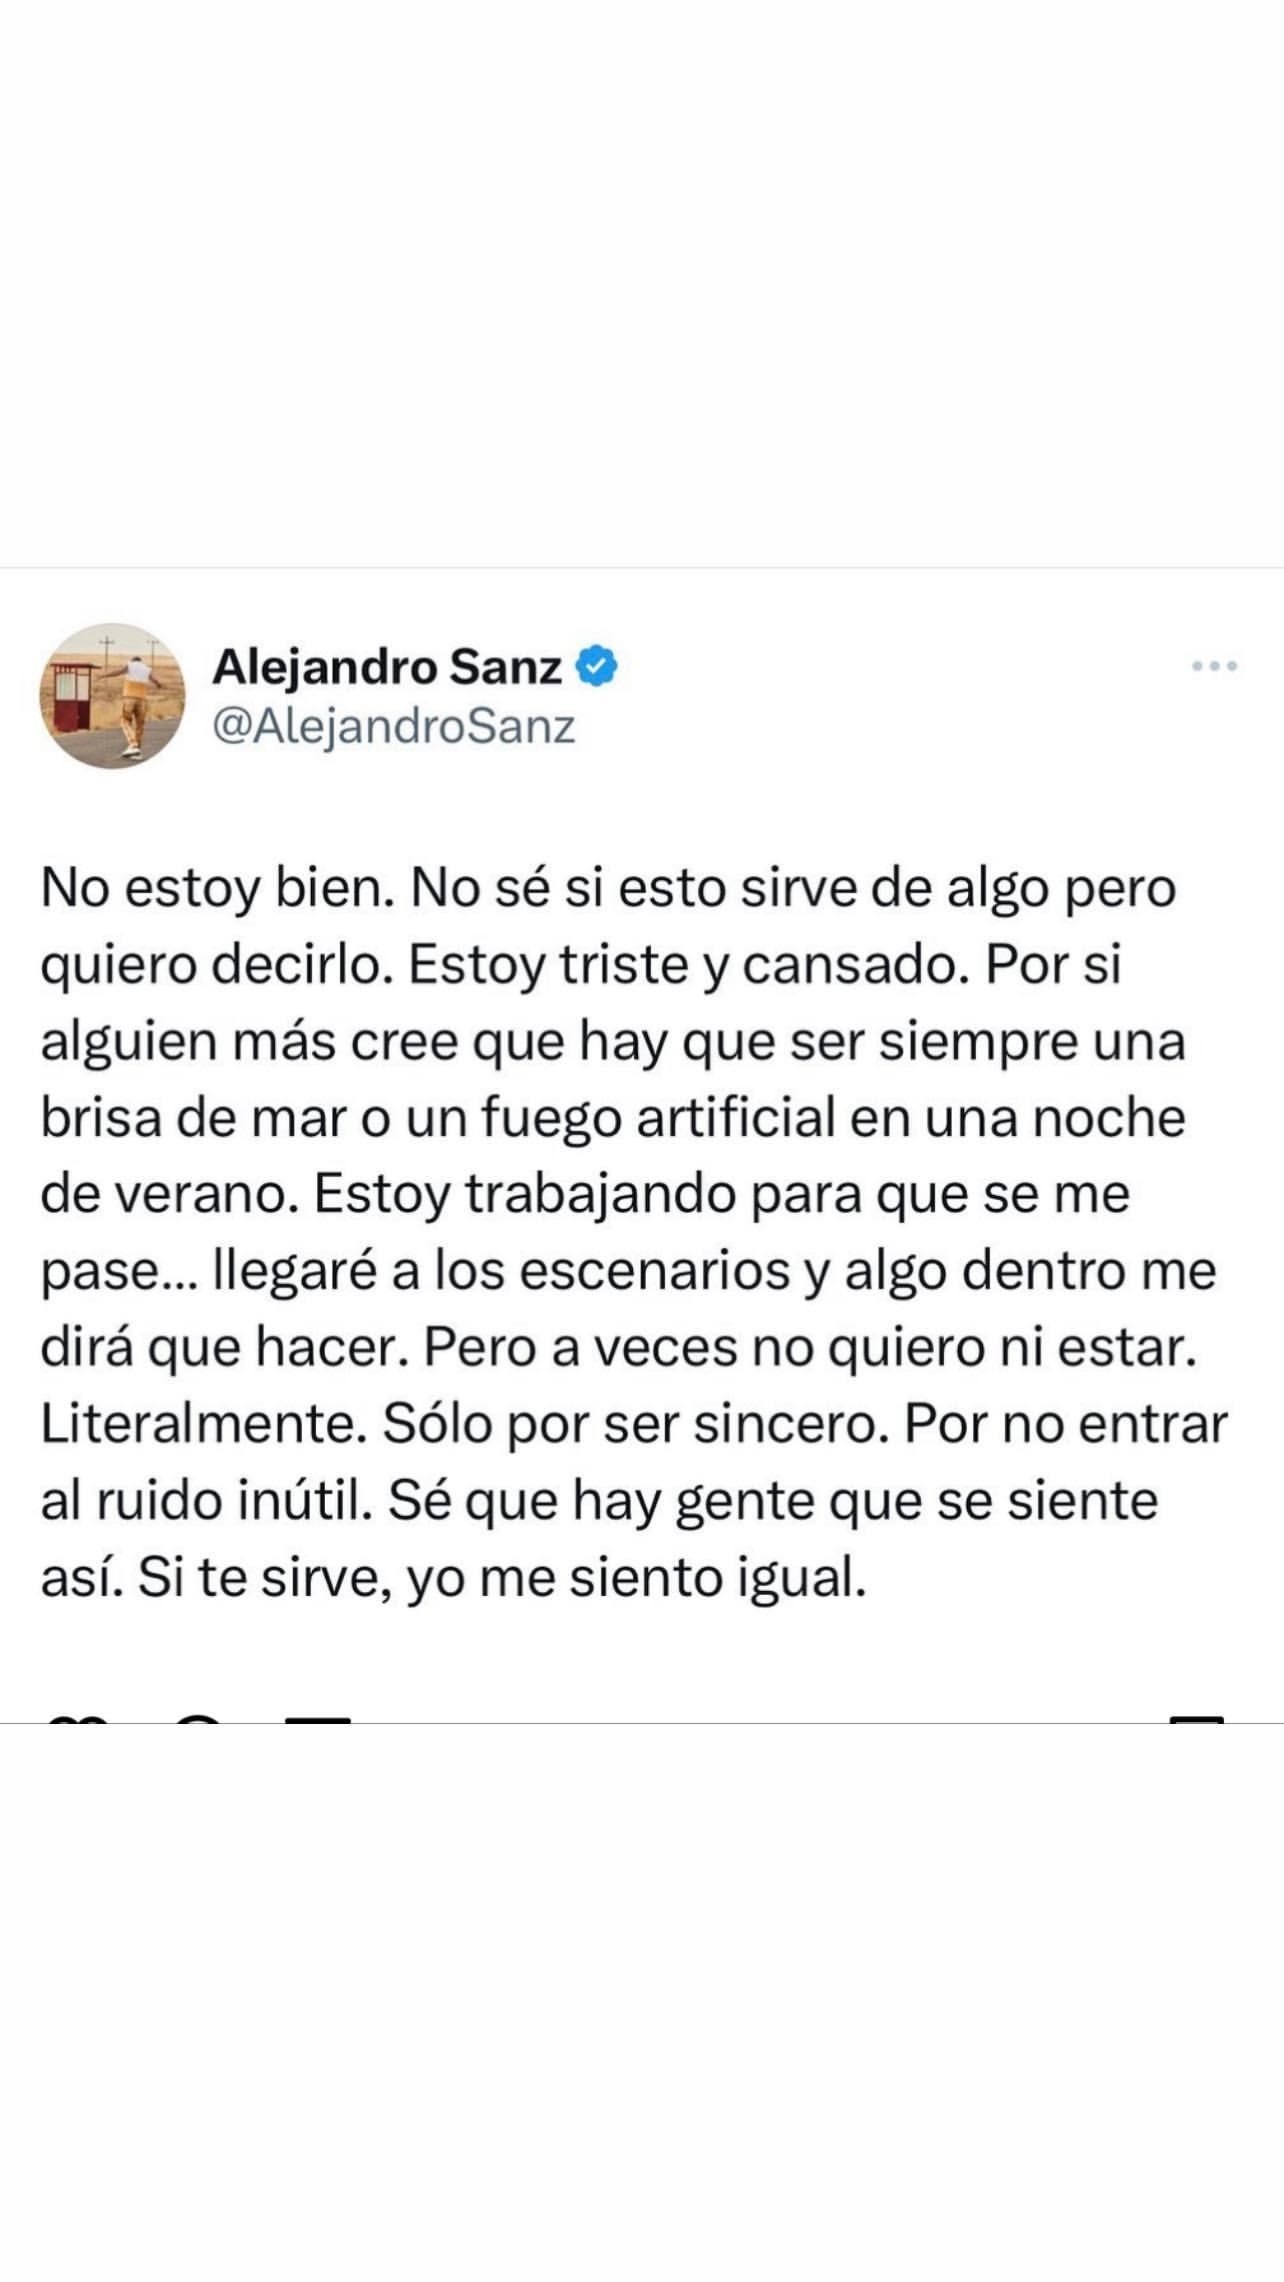 Alejandro Sanz y el mensaje que preocupa a sus fanáticos: “A veces no quiero ni estar”